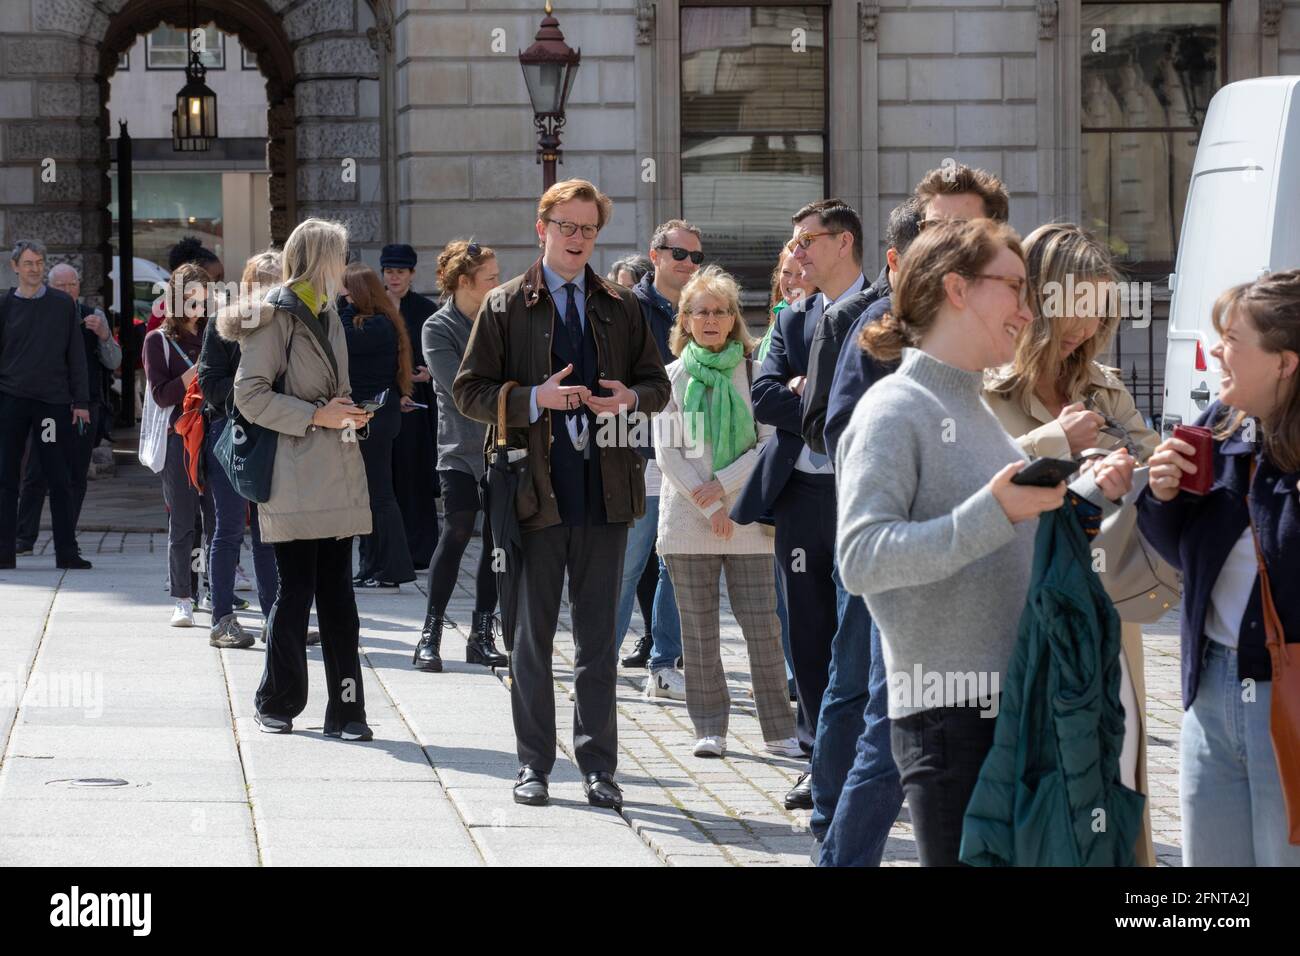 Files d'attente de visiteurs devant l'entrée de la Royal Academy of Arts, Burlington House, Piccadilly, Londres, Angleterre, Royaume-Uni Banque D'Images